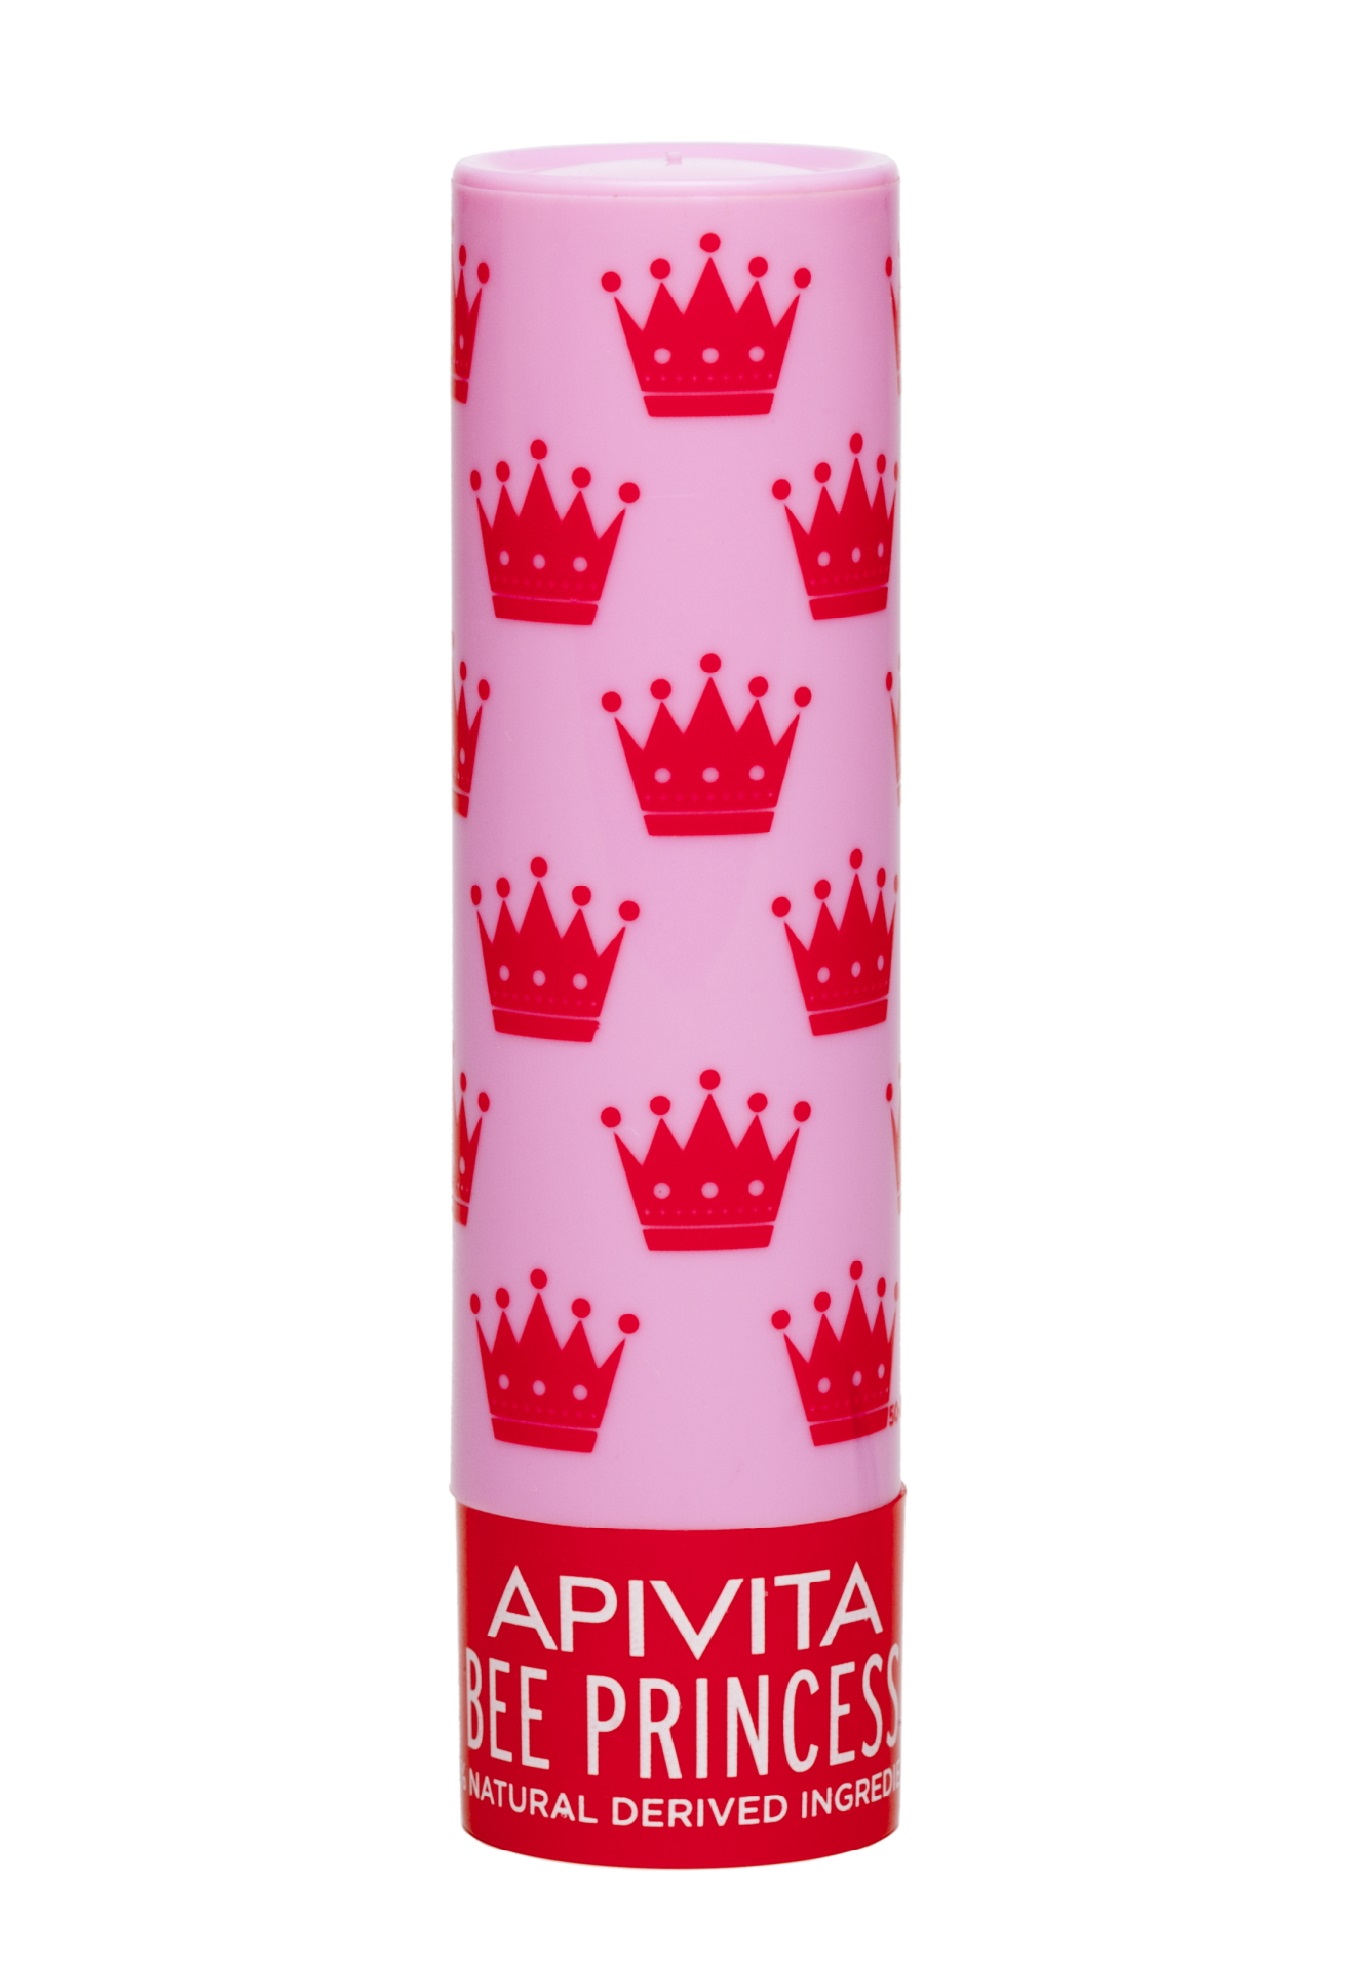 Apivita Уход для губ Принцесса Пчела Био, 4,4 г (Apivita, Lip Care) цена и фото